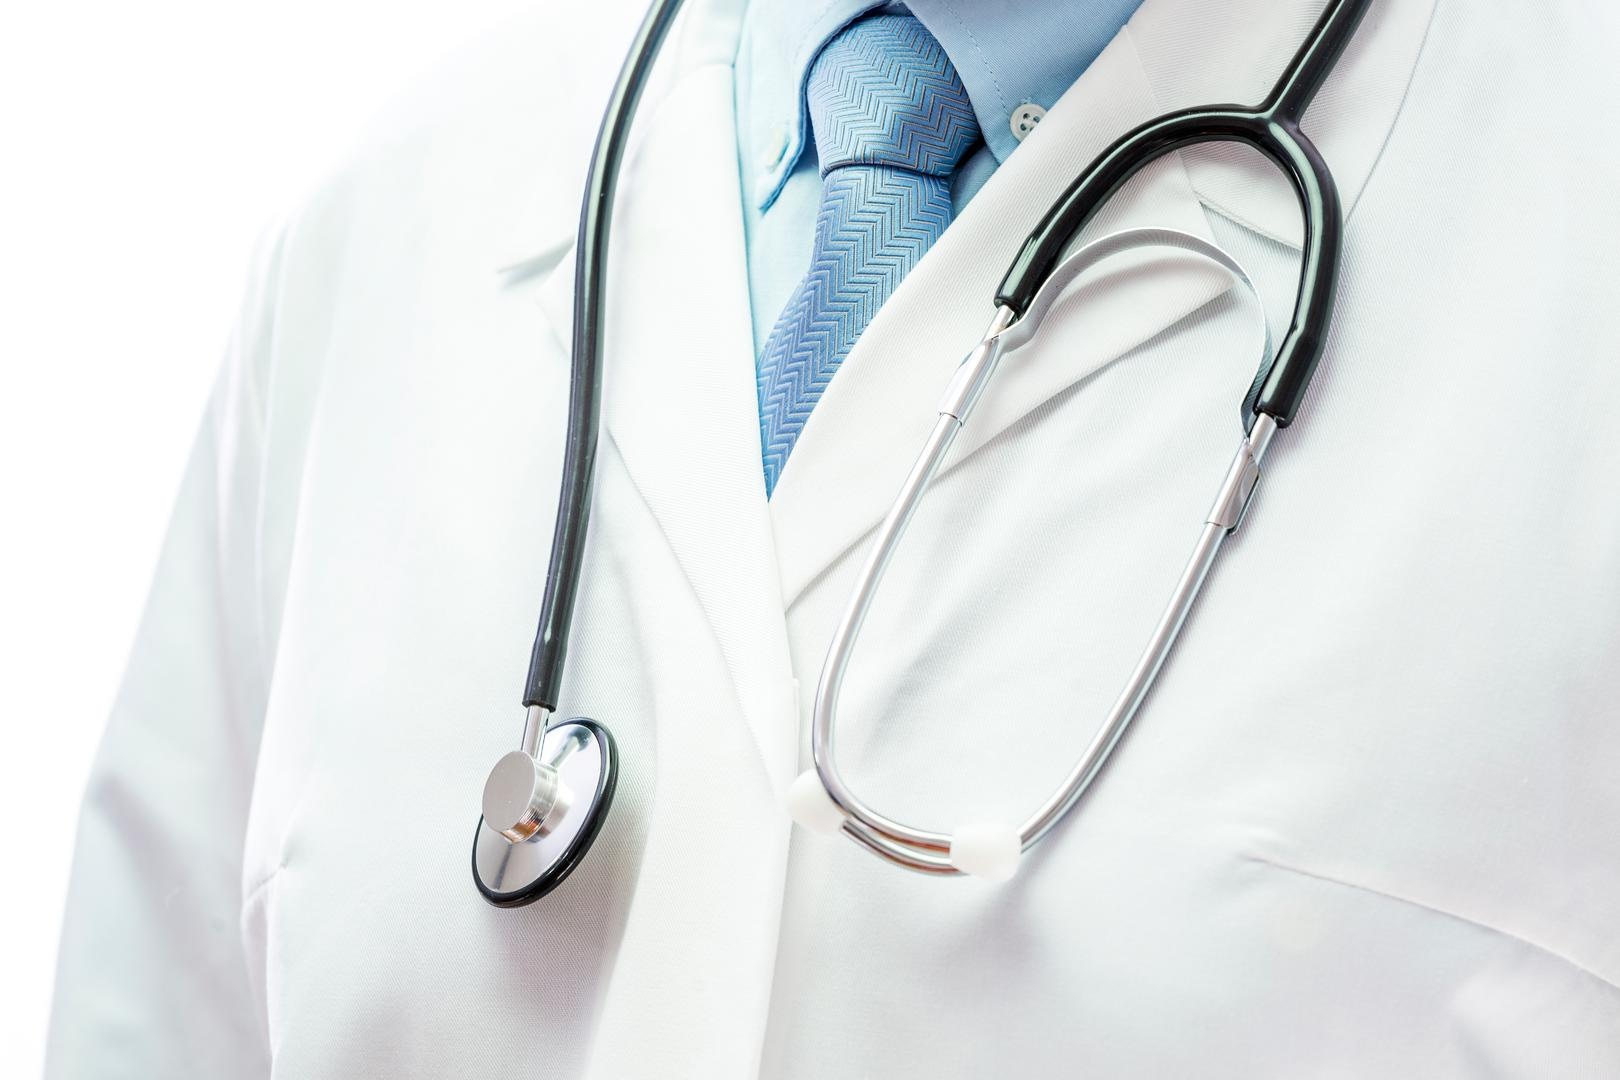 Artsen vragen globaal medisch dossier te verplichten